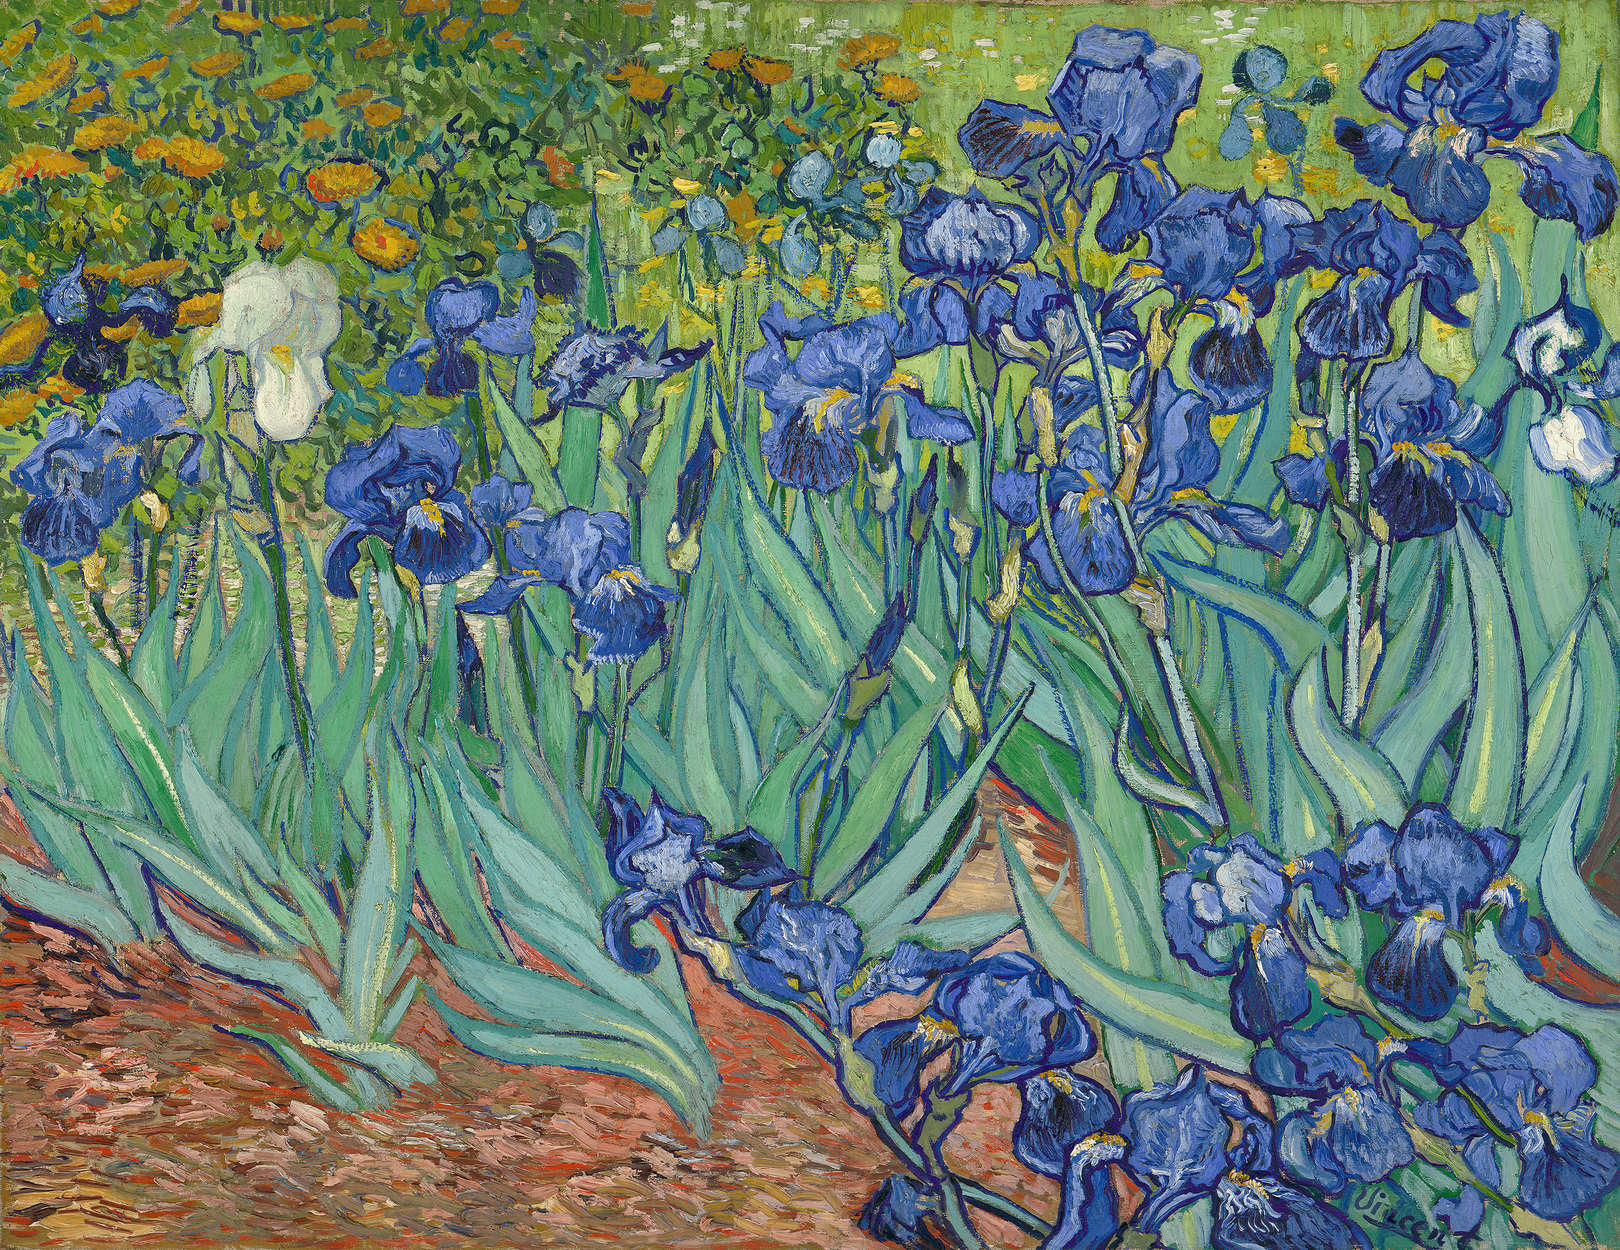             Papier peint panoramique "Iris" de Vincent van Gogh
        